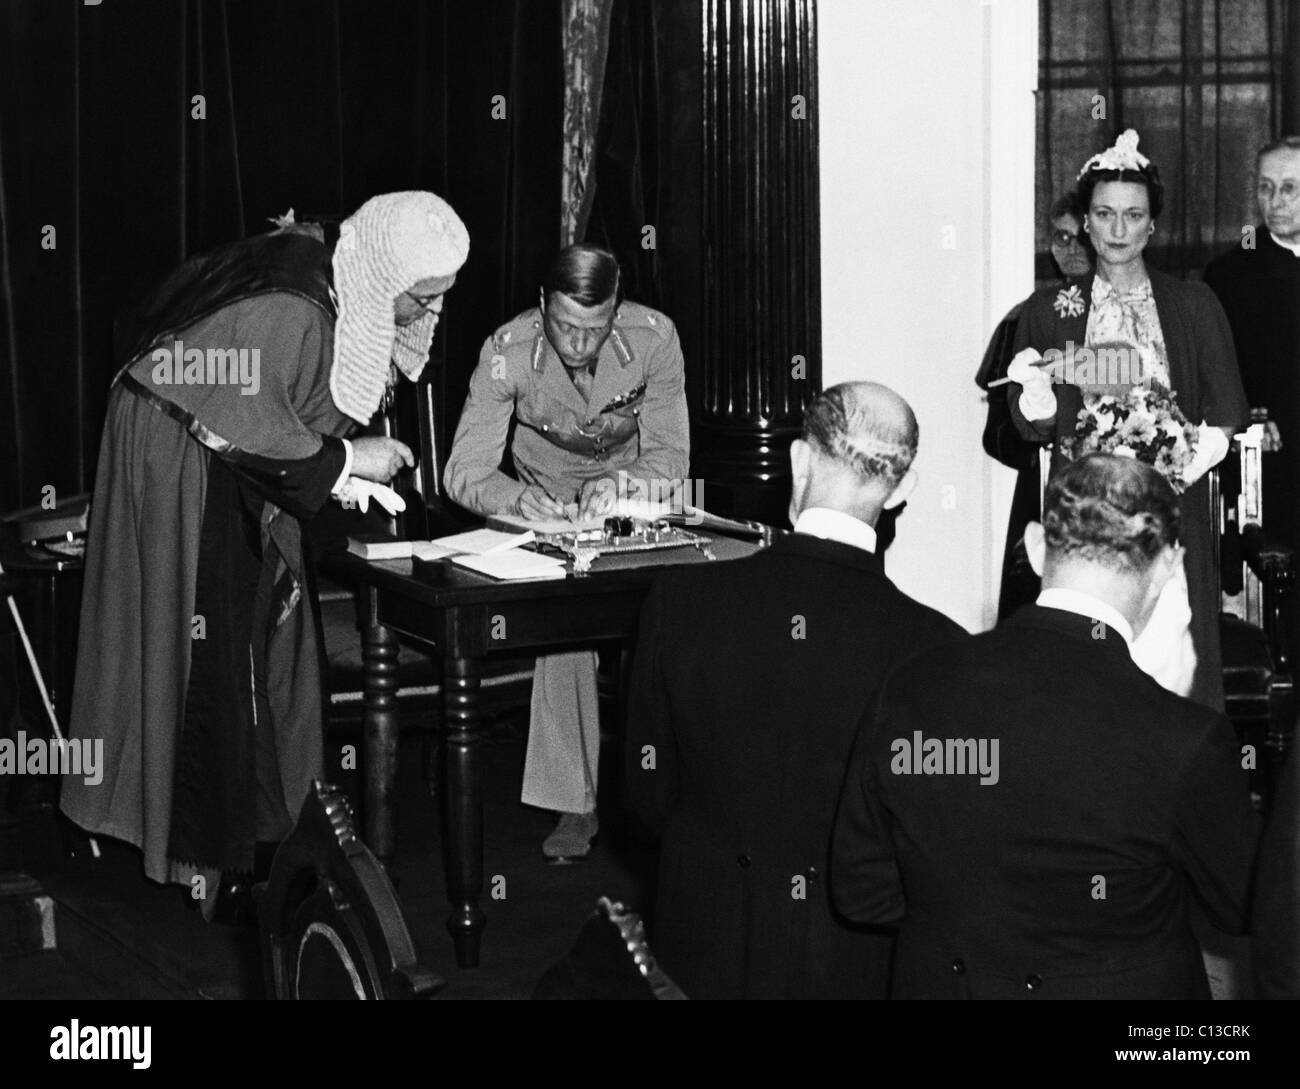 La Seconde Guerre mondiale. Le prince Edward, duc de Windsor, de signer le serment d'allégeance au roi George VI comme il prend plus de fonctions en tant que gouverneur général des Bahamas. Droite : la Duchesse de Windsor, Wallis Simpson. Août, 1940. Banque D'Images